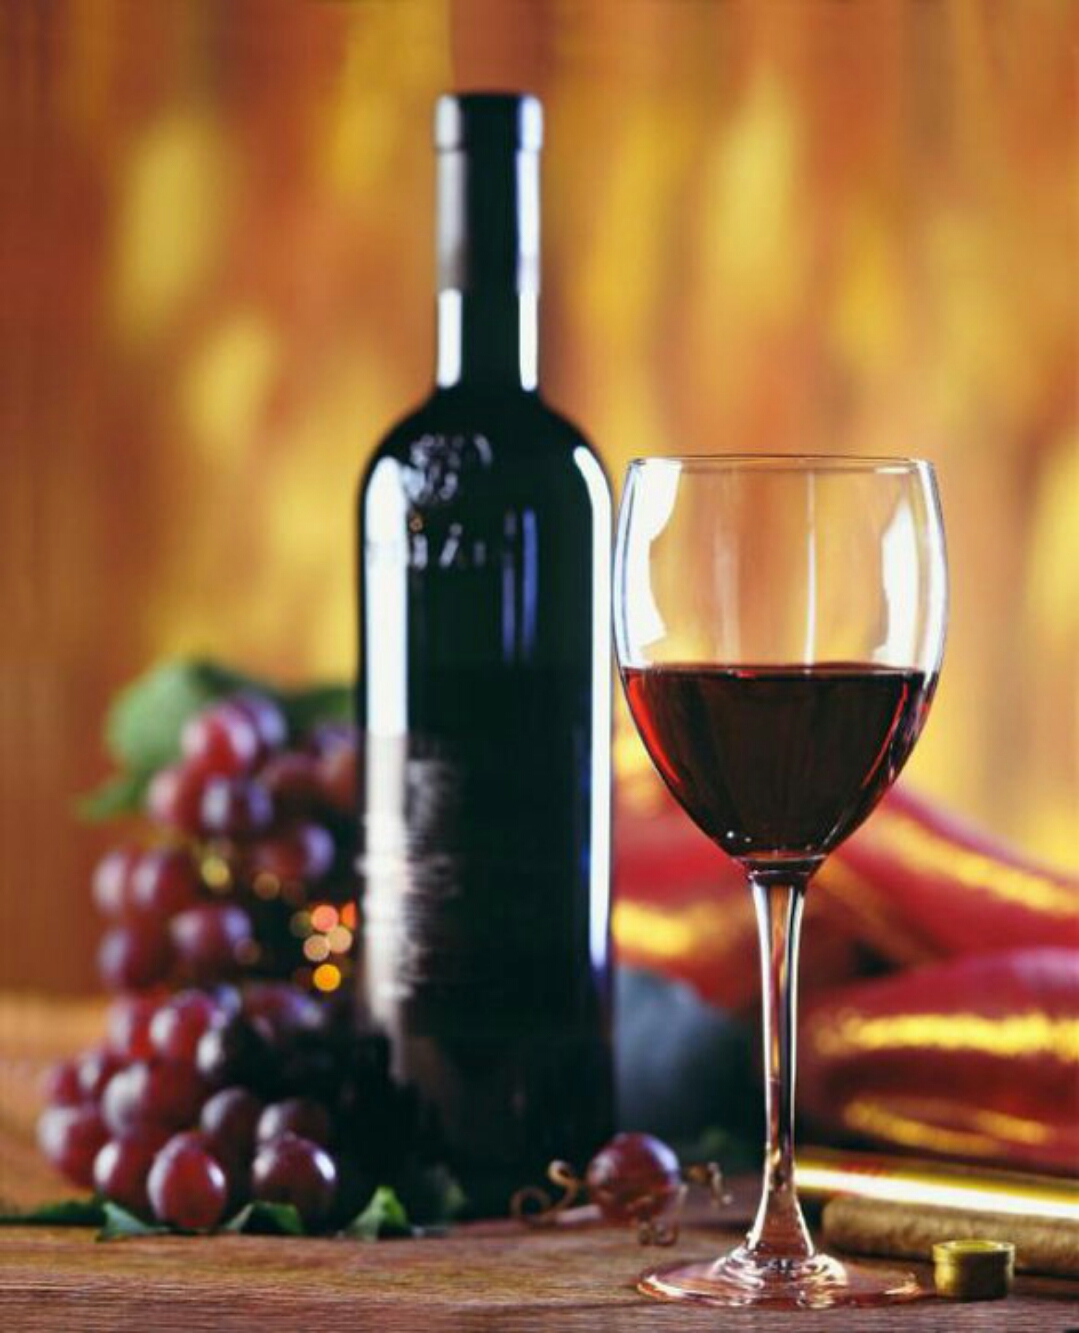 Bộ Sưu Tập 999+ Hình Ảnh Ly Rượu Đỉnh Cao - Hình Ảnh Ly Rượu Cực Chất Độ  Phân Giải 4K